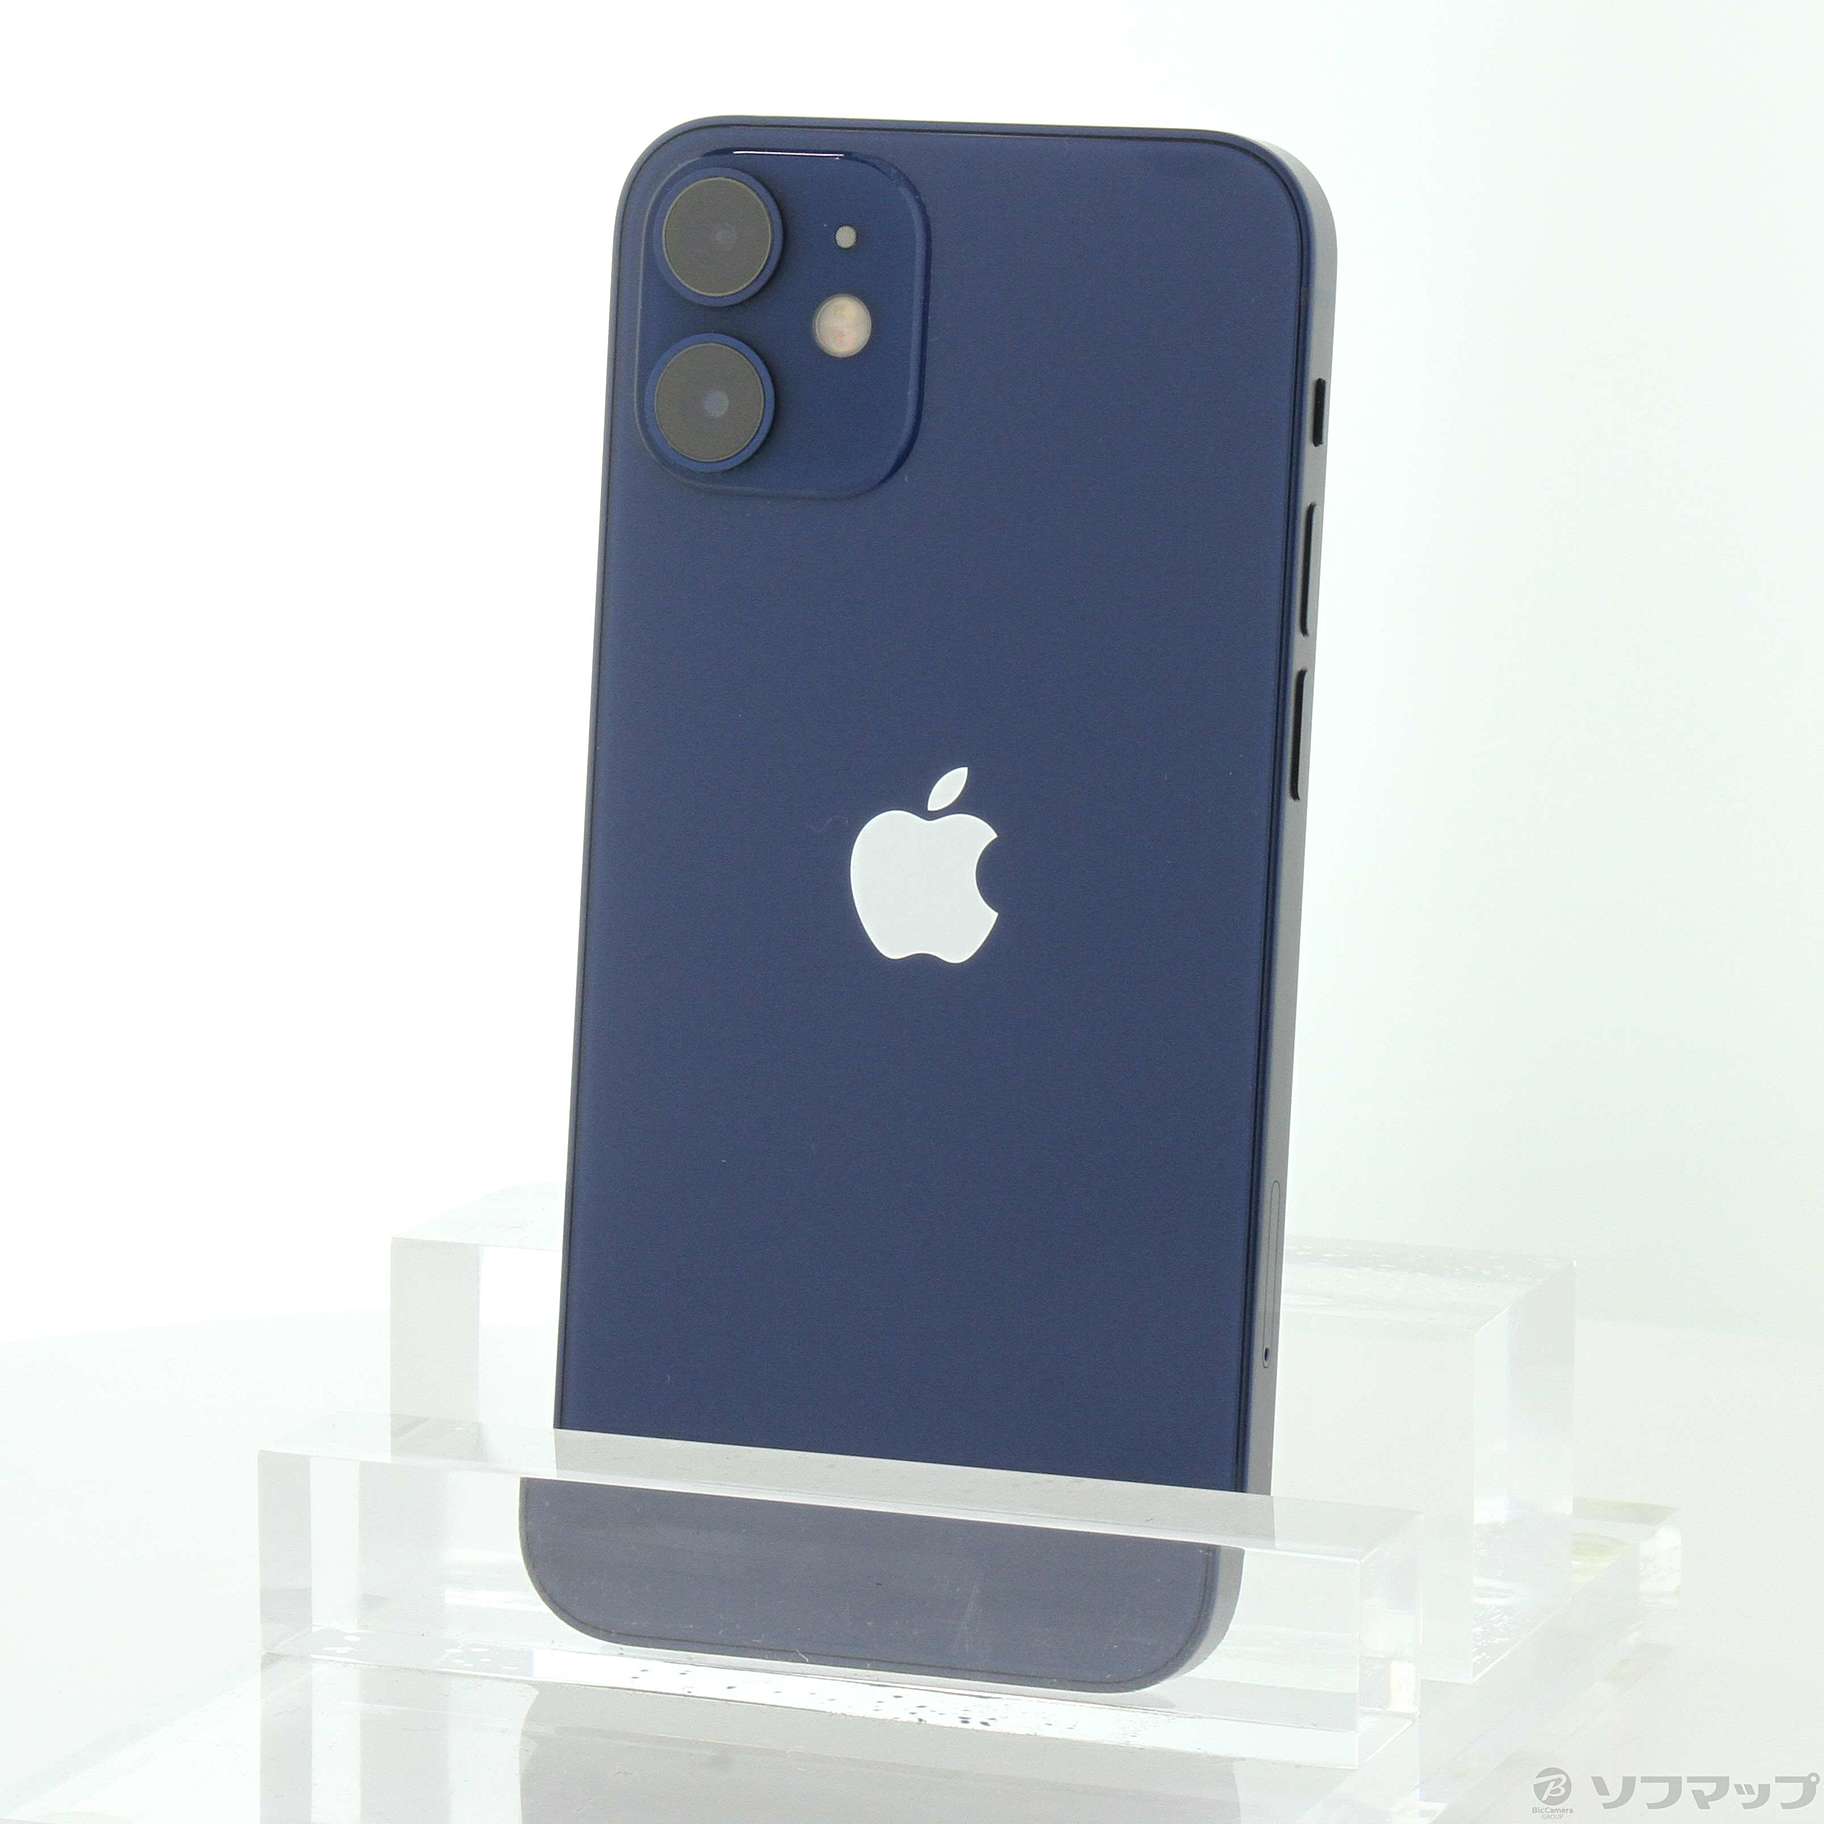 iPhone 12 mini 128GB Blue SIM Free